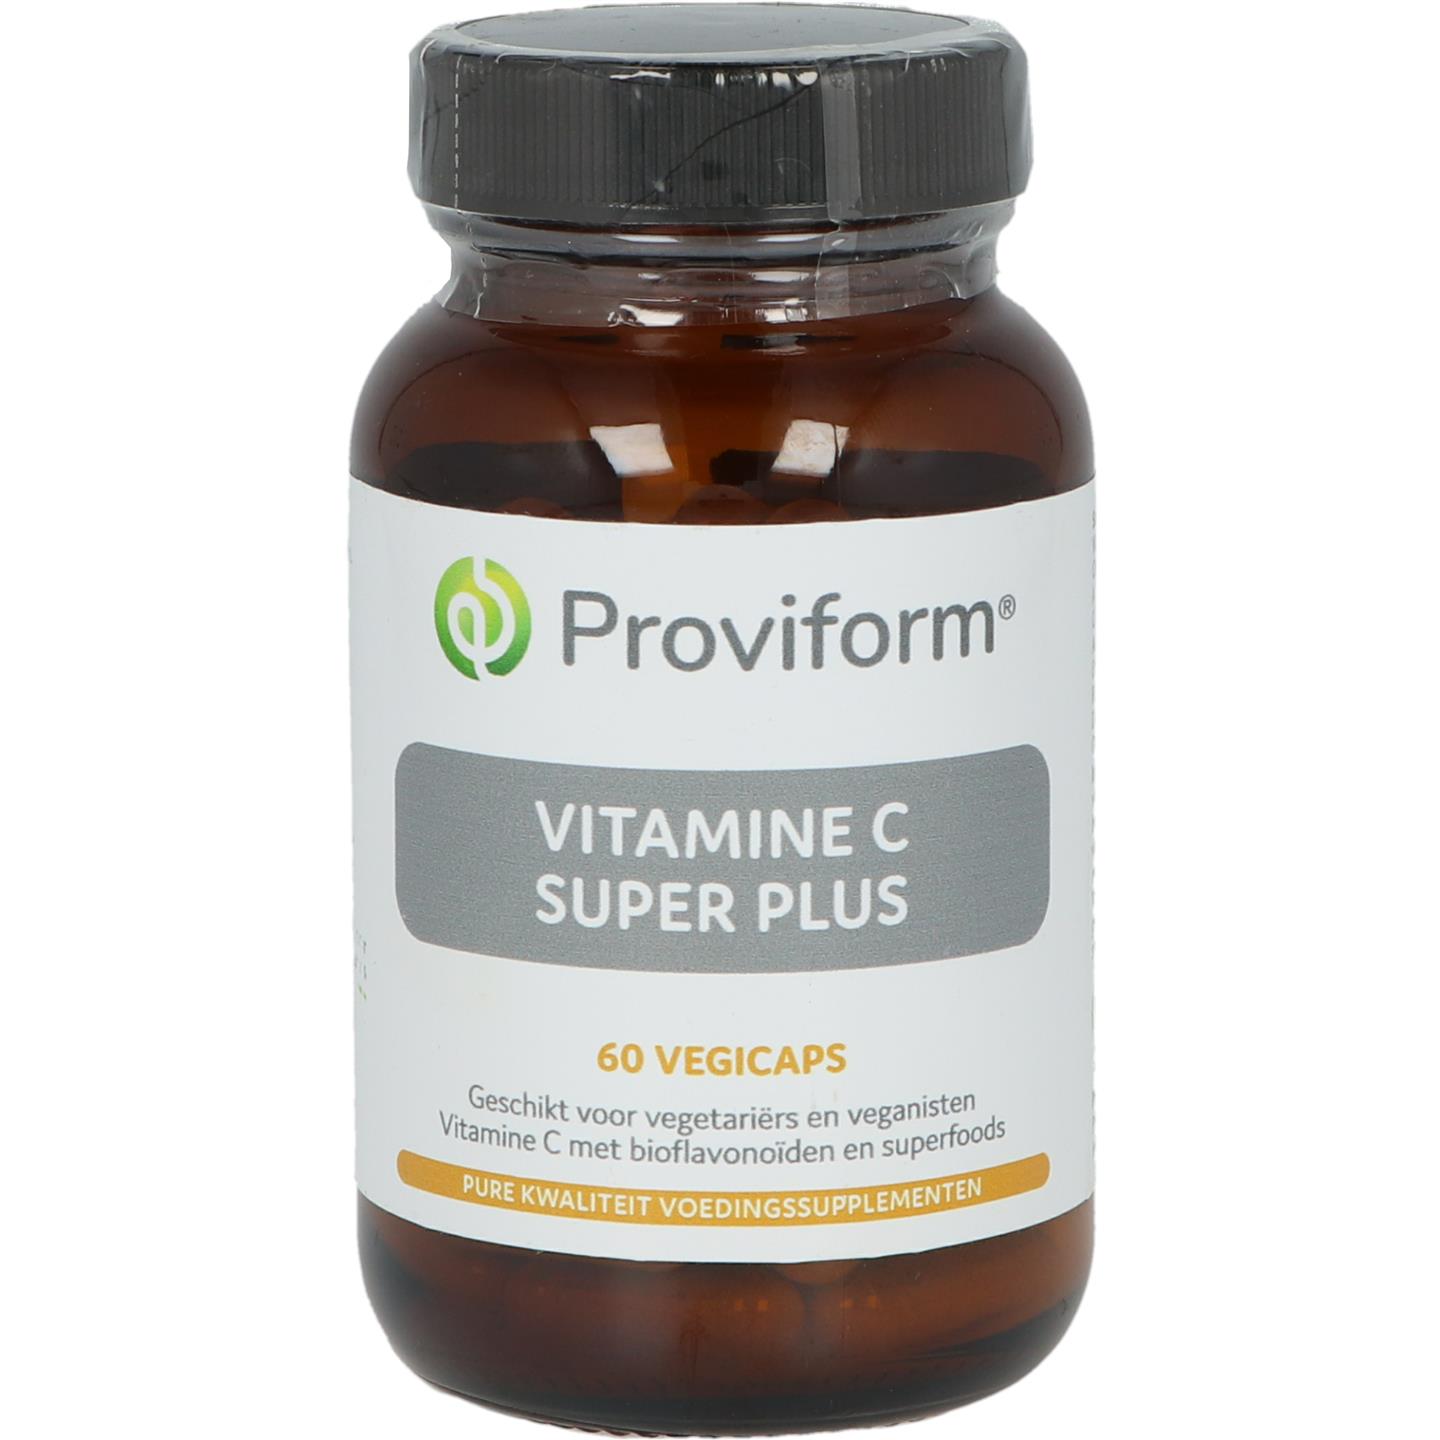 Vitamine C Super Plus